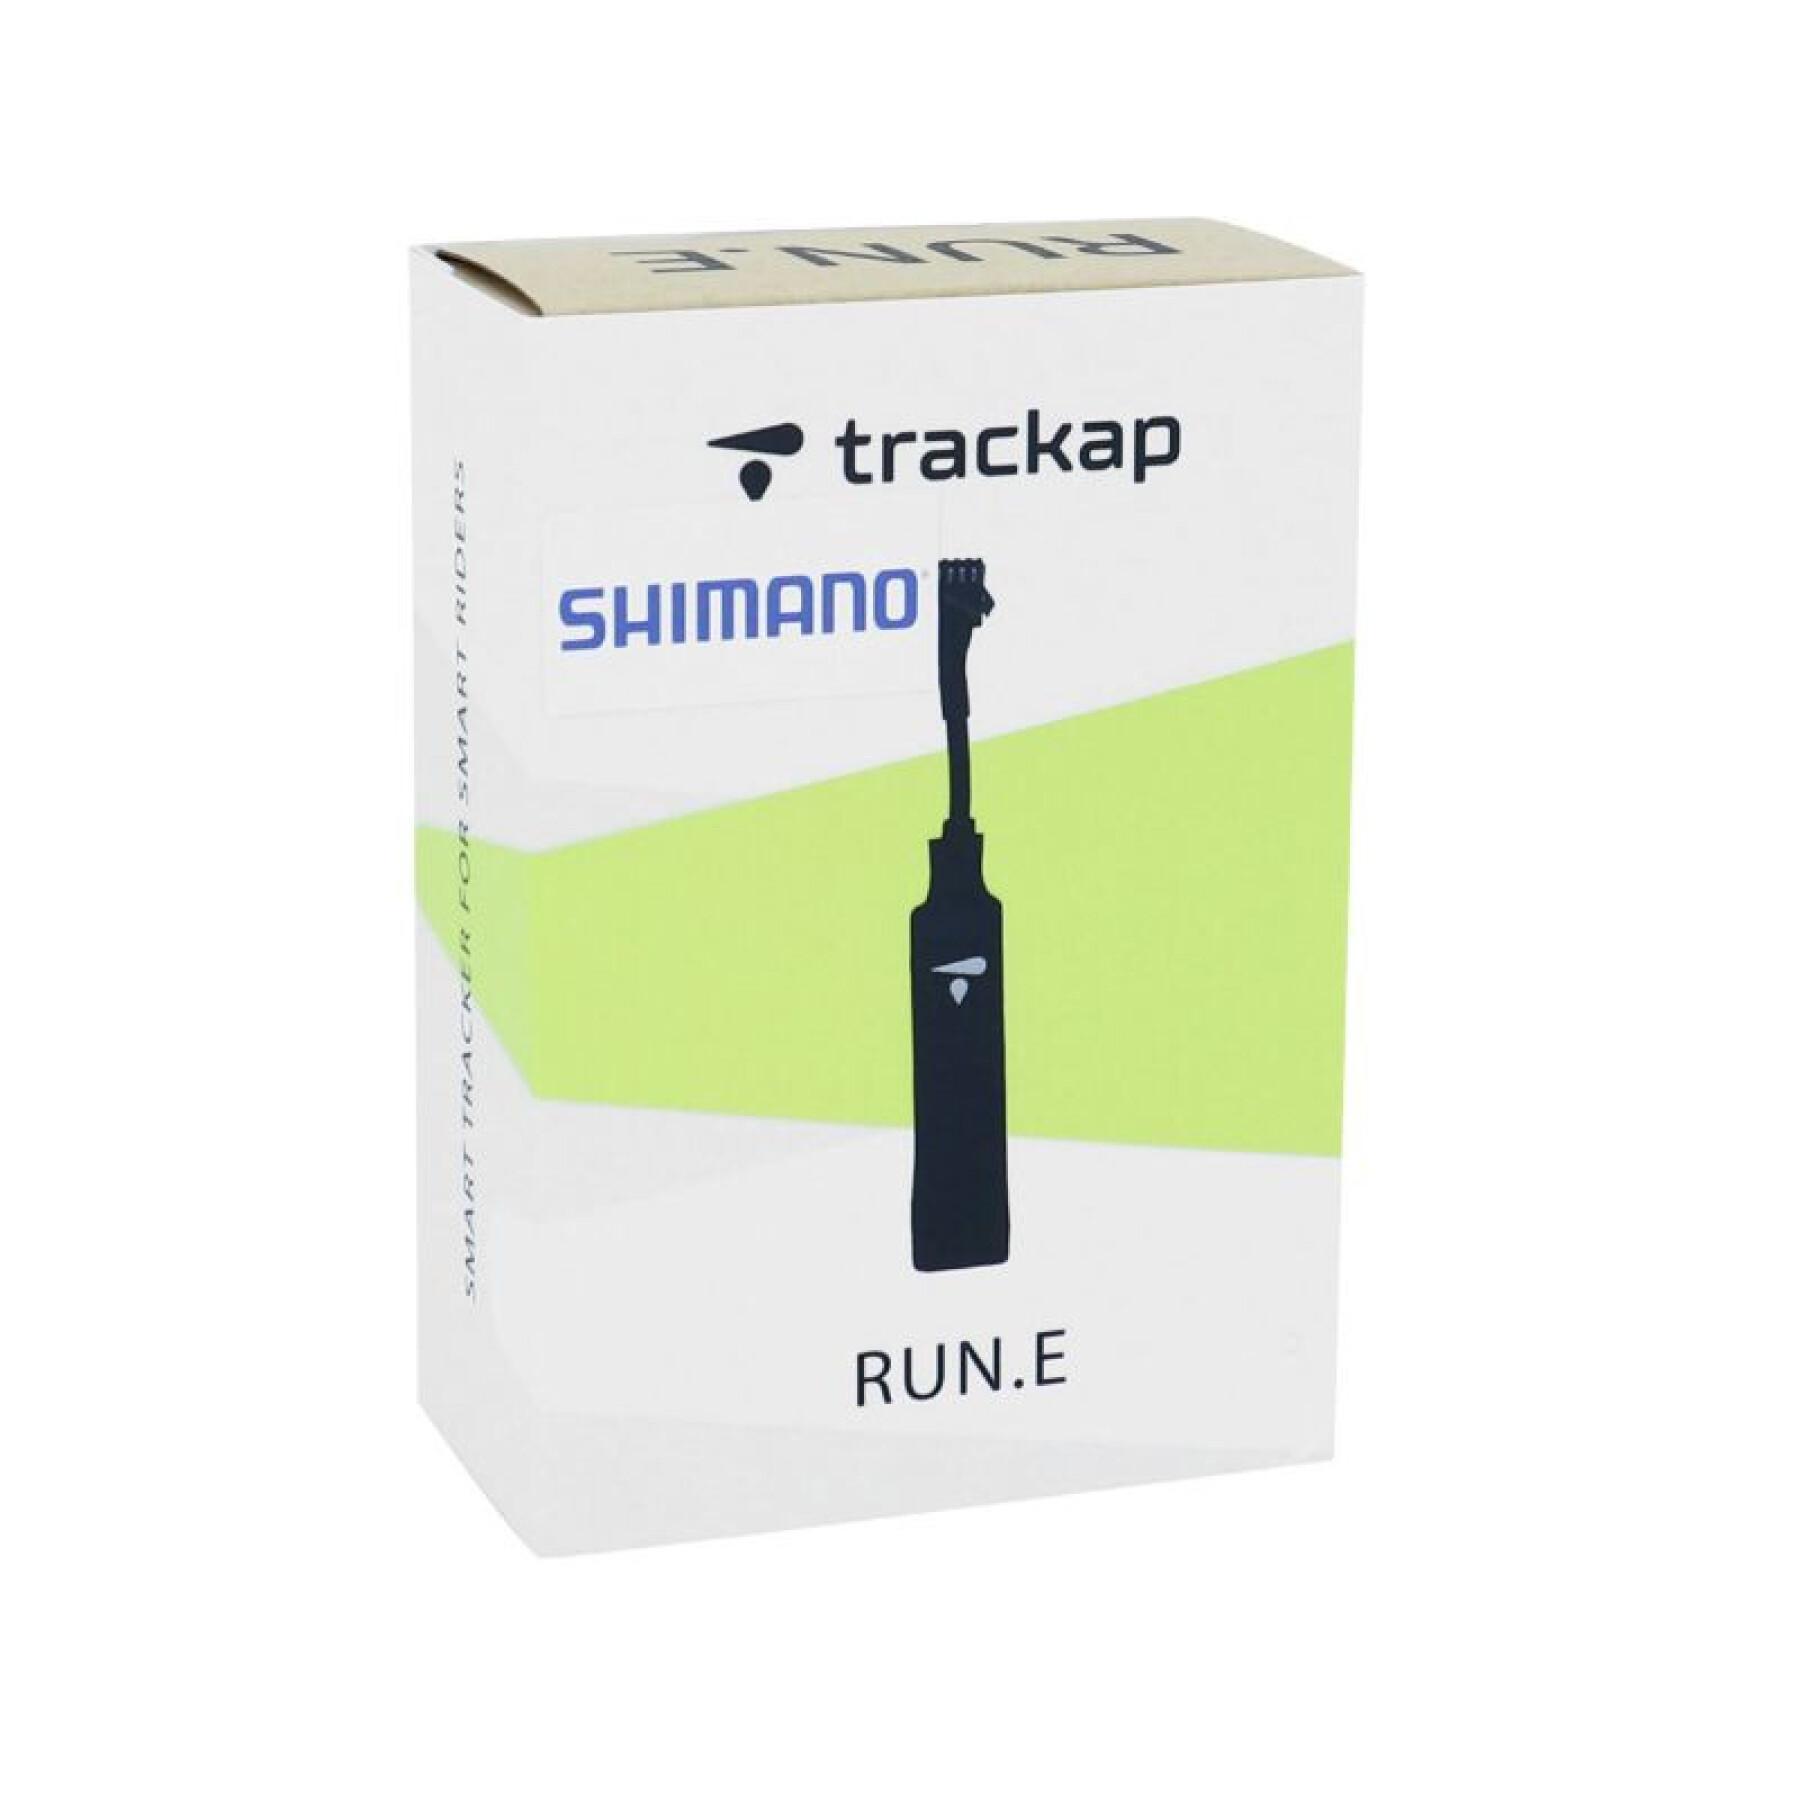 Tracker gps dispositivo di sicurezza con 1 anno di abbonamento Trackap Run E Shimano